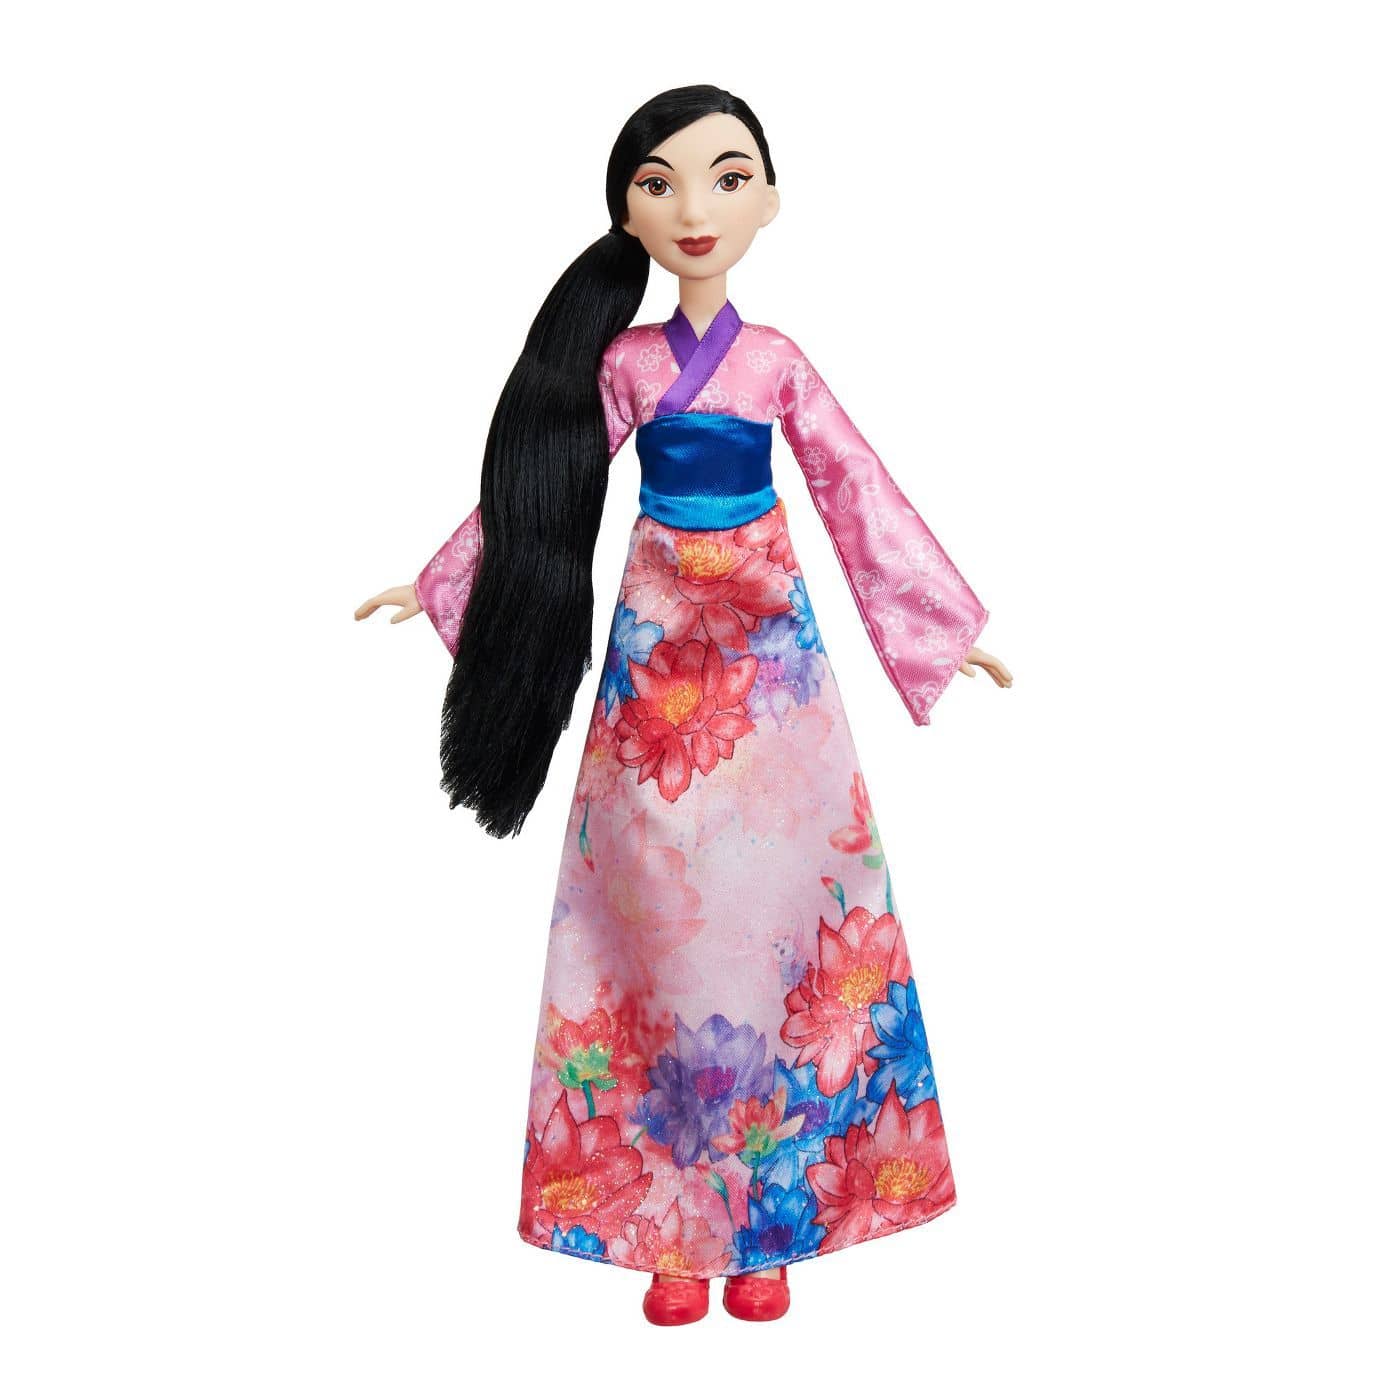 Mulan Shimmer Disney Princess-Kidding Around NYC